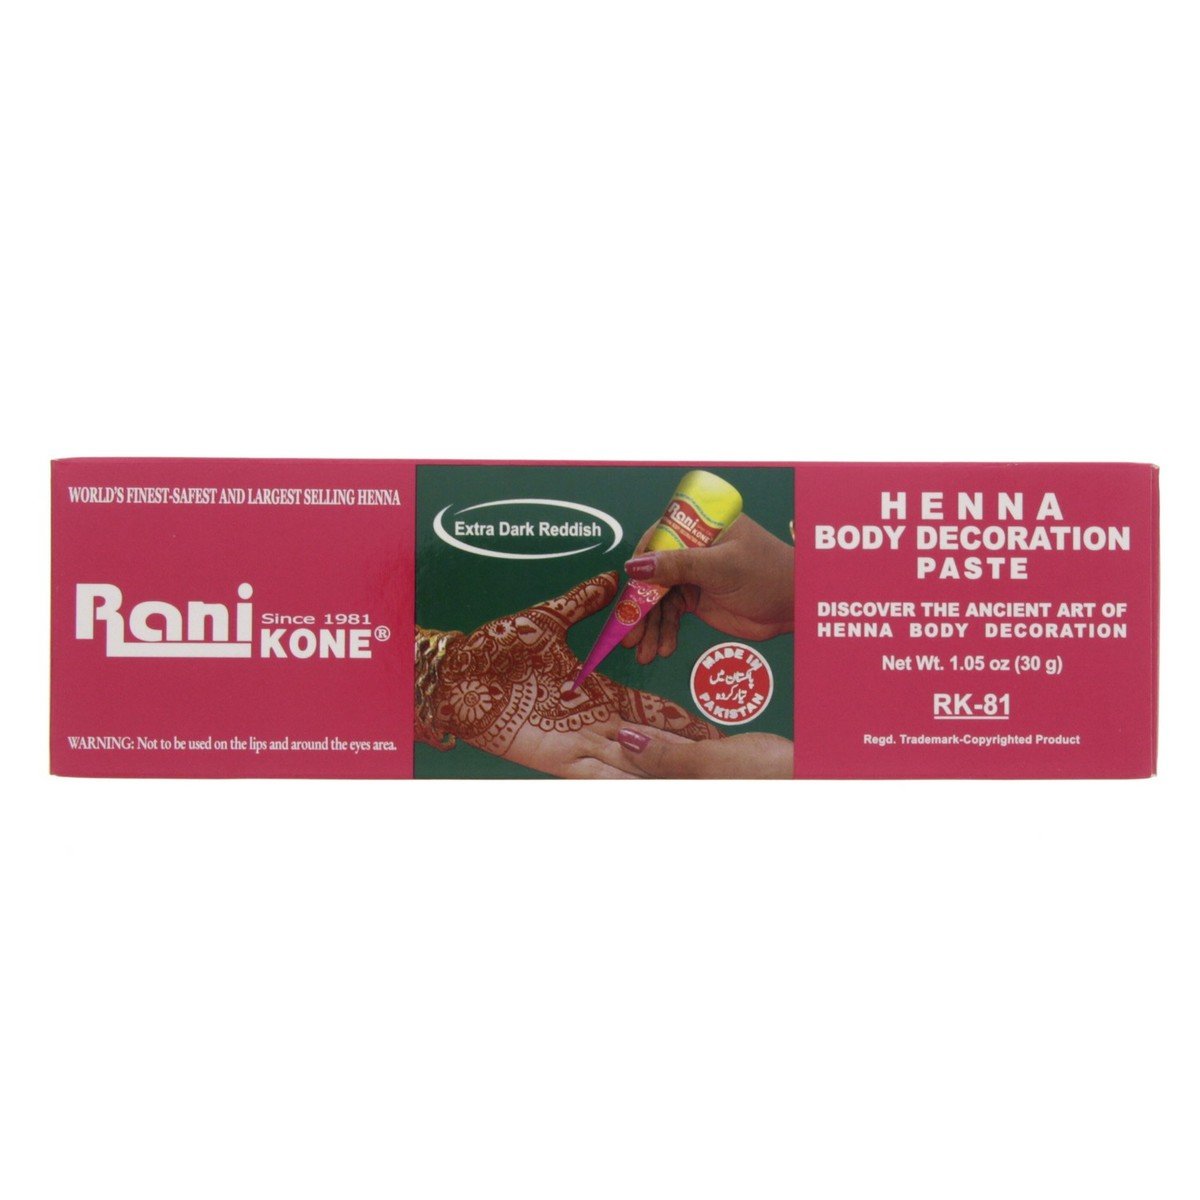 Rani Kone Extra Dark Reddish Henna Body Decoration Paste 30 g